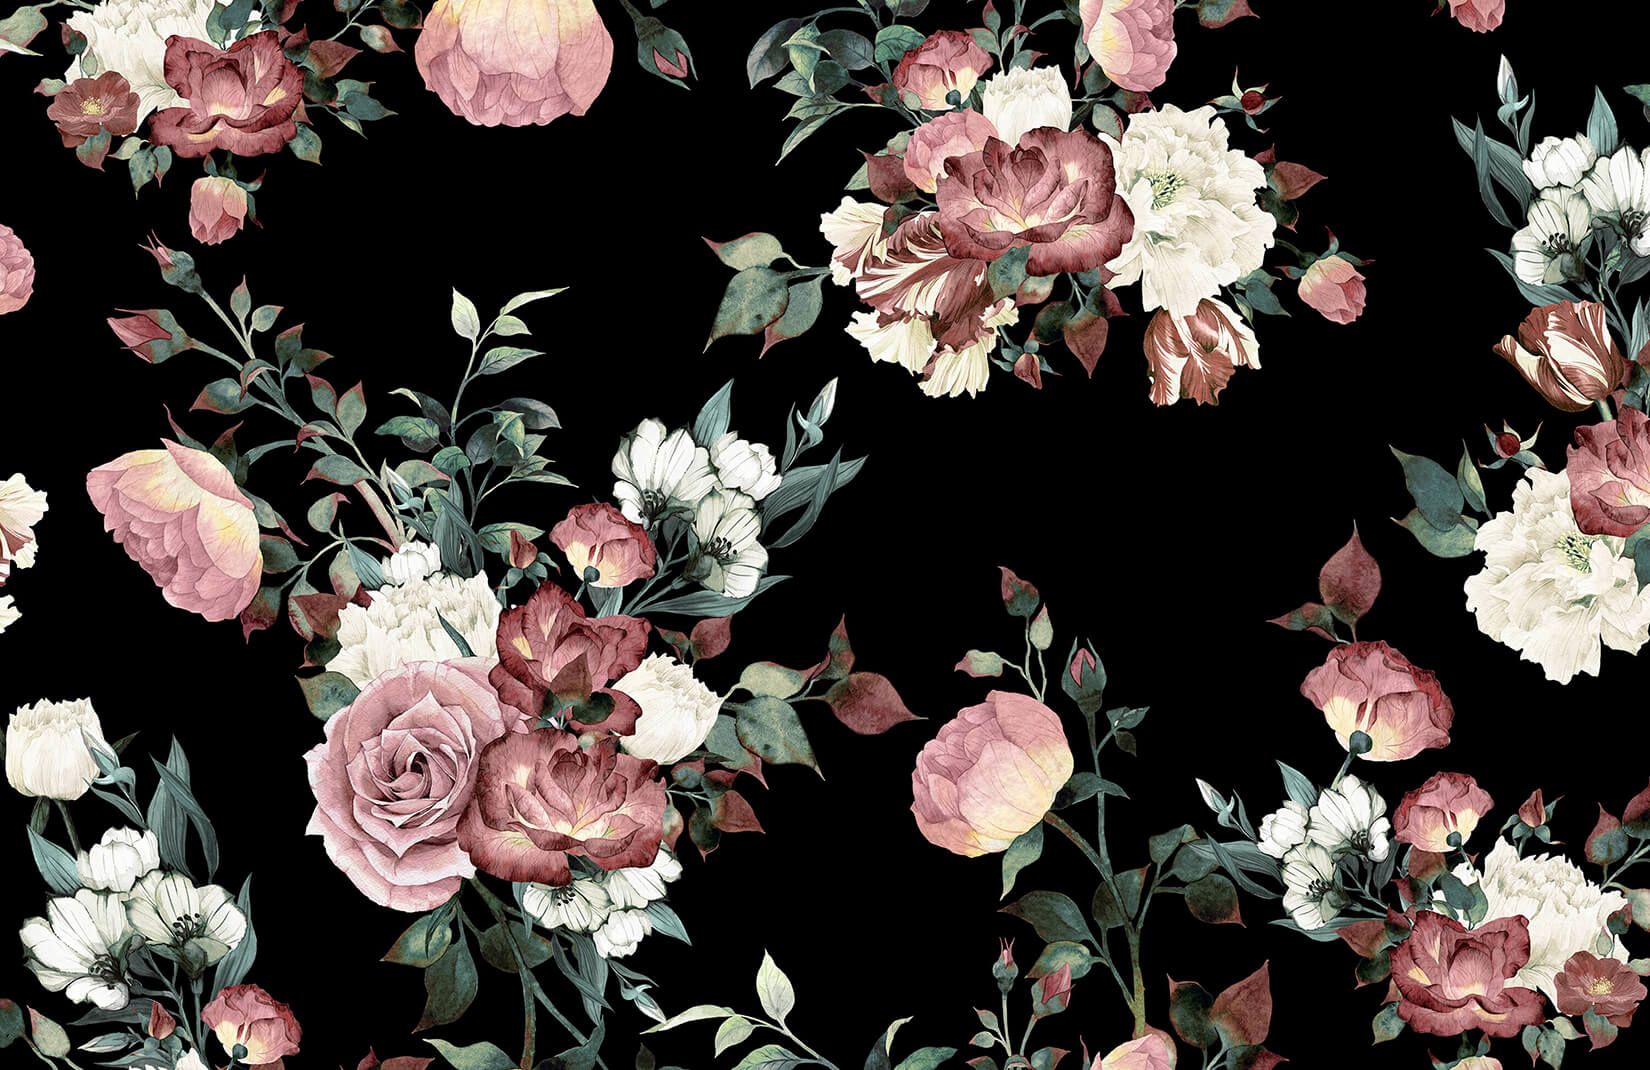 Vintage Pink, Cream & Black Floral Wallpaper Mural